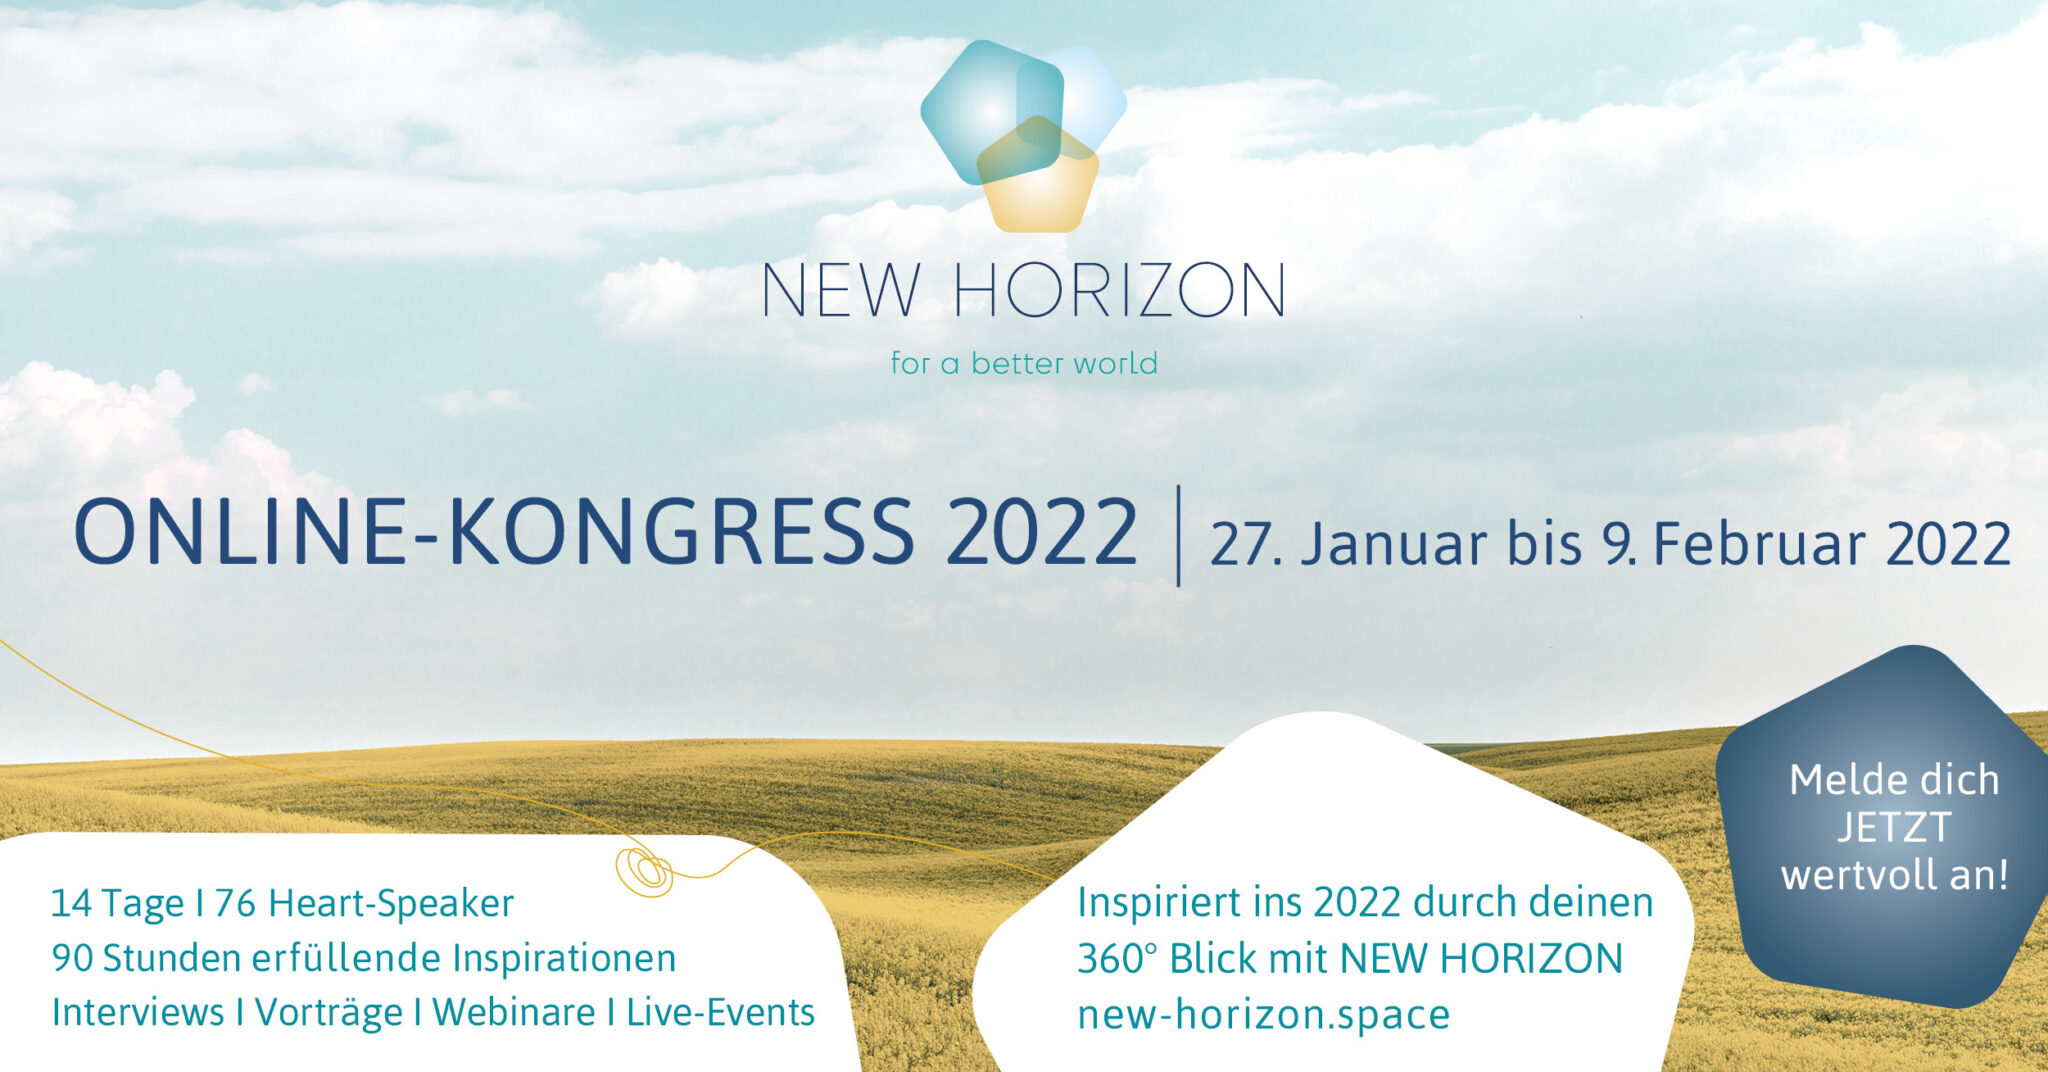 NEW HORIZON for a better world online kongress